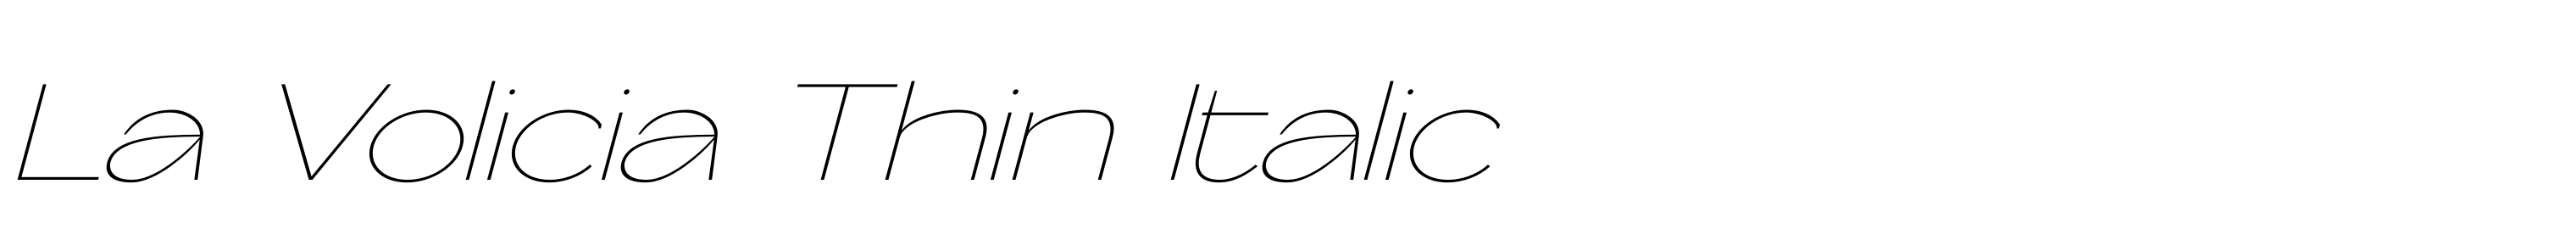 La Volicia Thin Italic